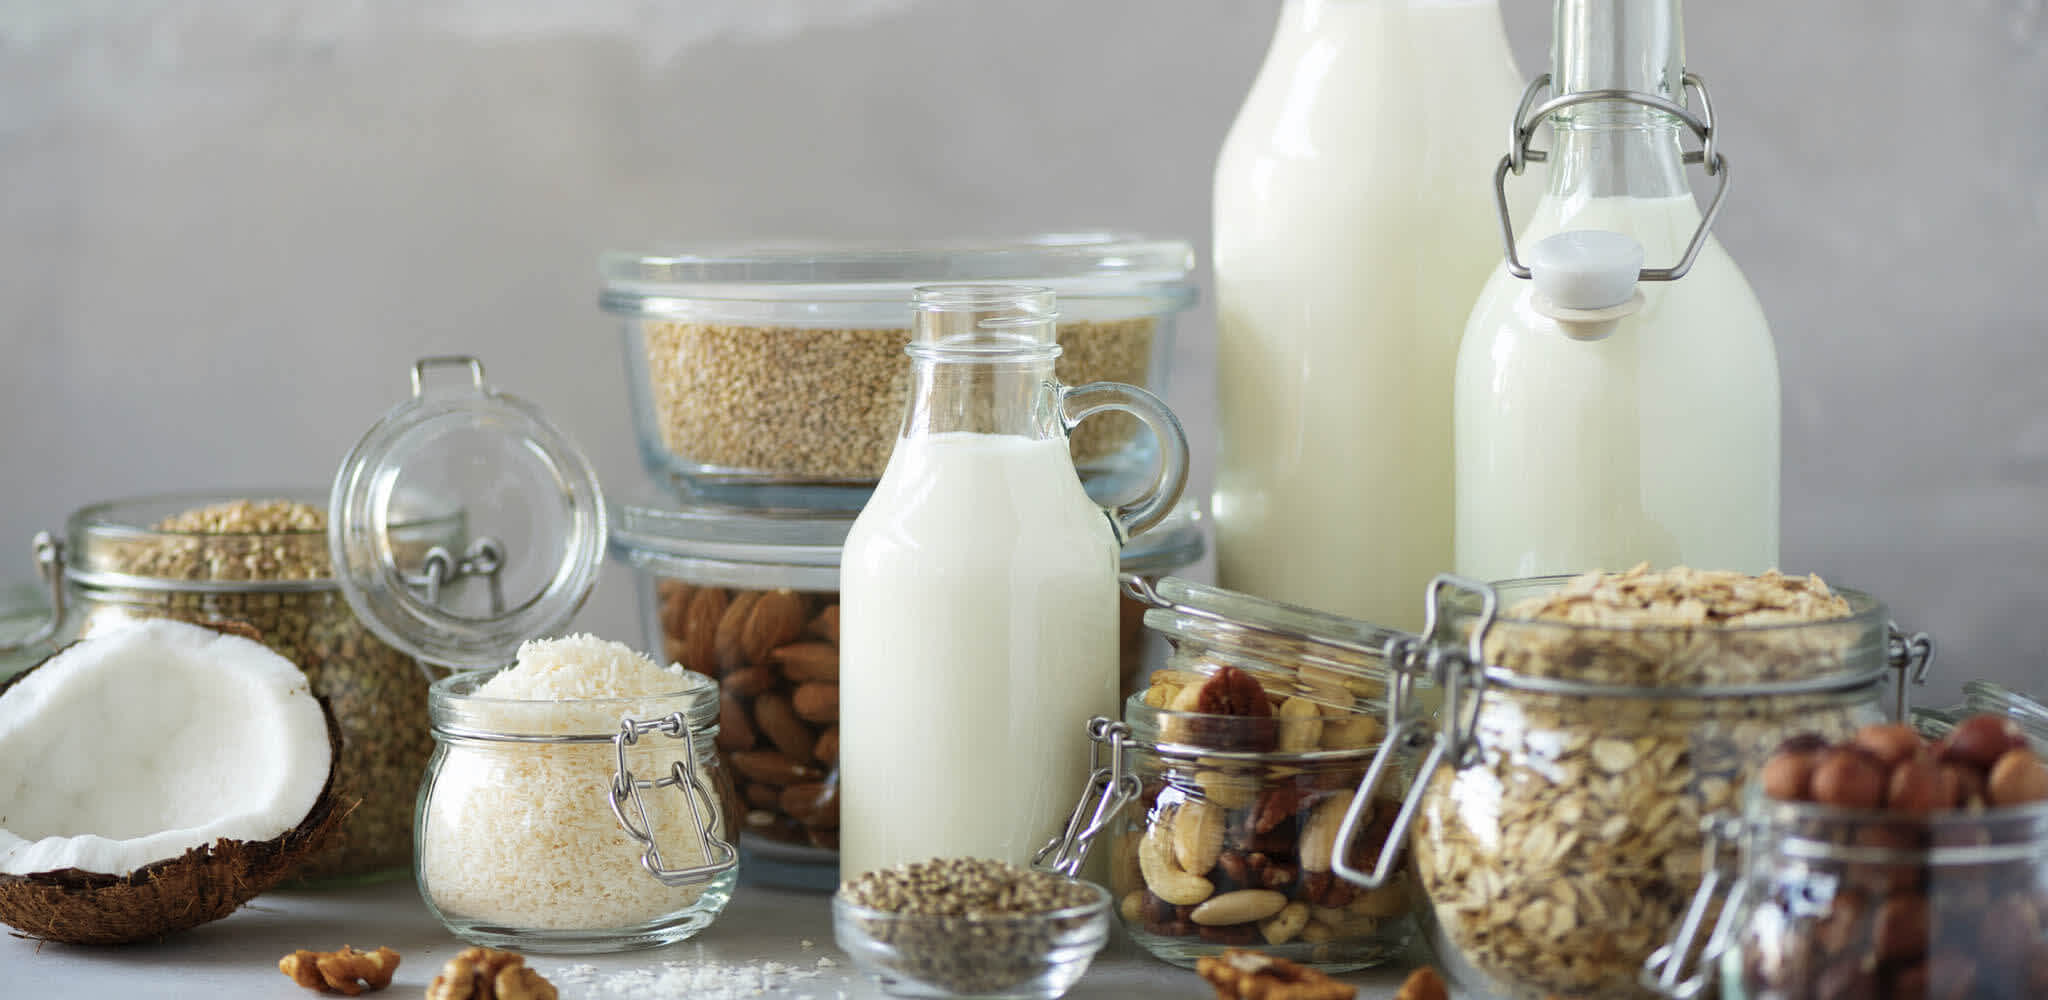 Garrafas de leite de tamanhos variados e potes de cereais como granola e aveia expostos sobre uma mesa